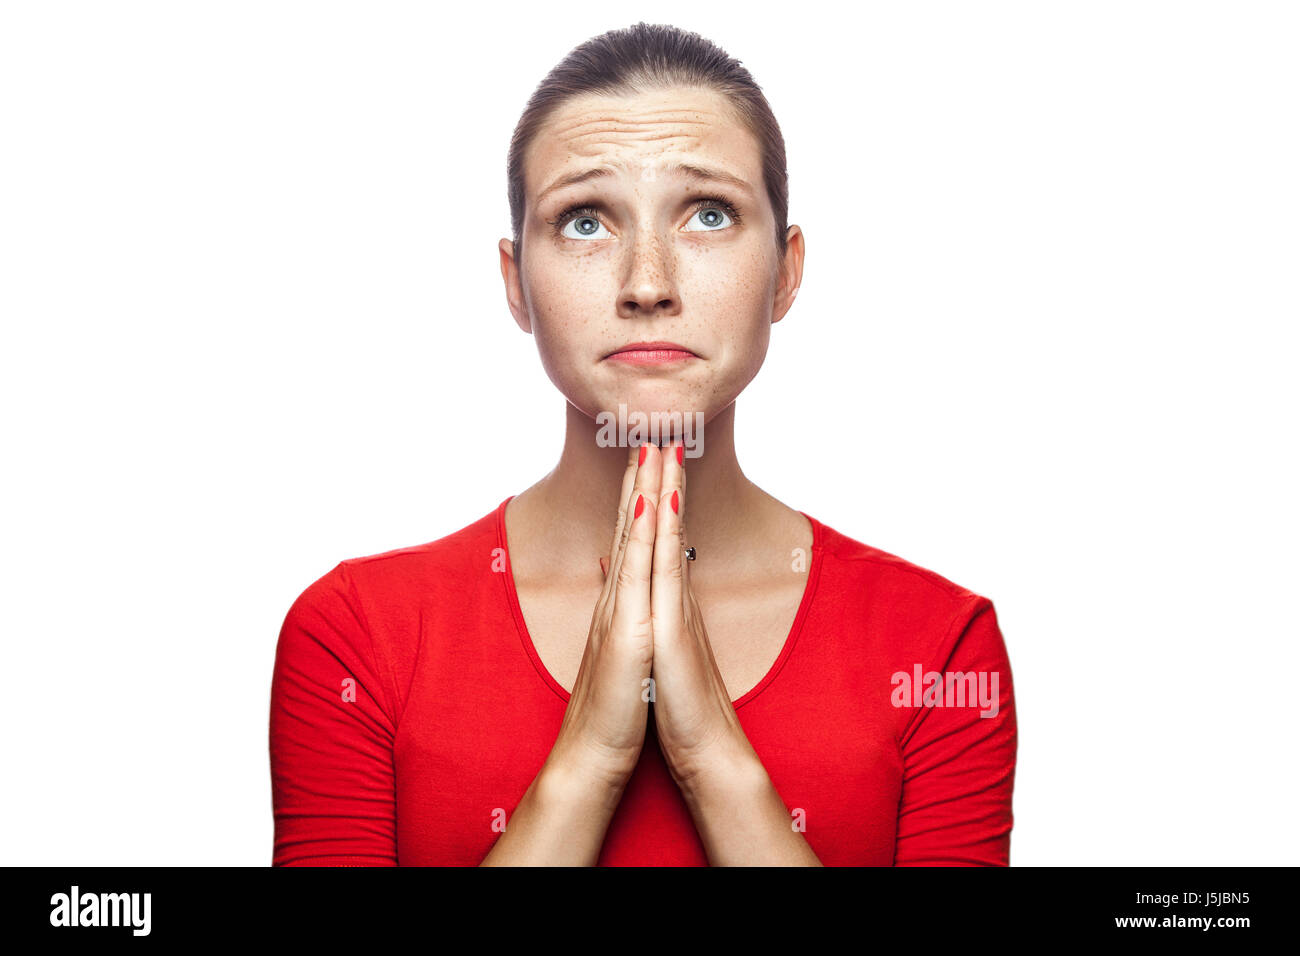 Porträt der unglückliche erfreulich Frau im roten T-shirt mit Sommersprossen. Nachschlagen und wünschte, Studio gedreht. isoliert auf weißem Hintergrund. Stockfoto